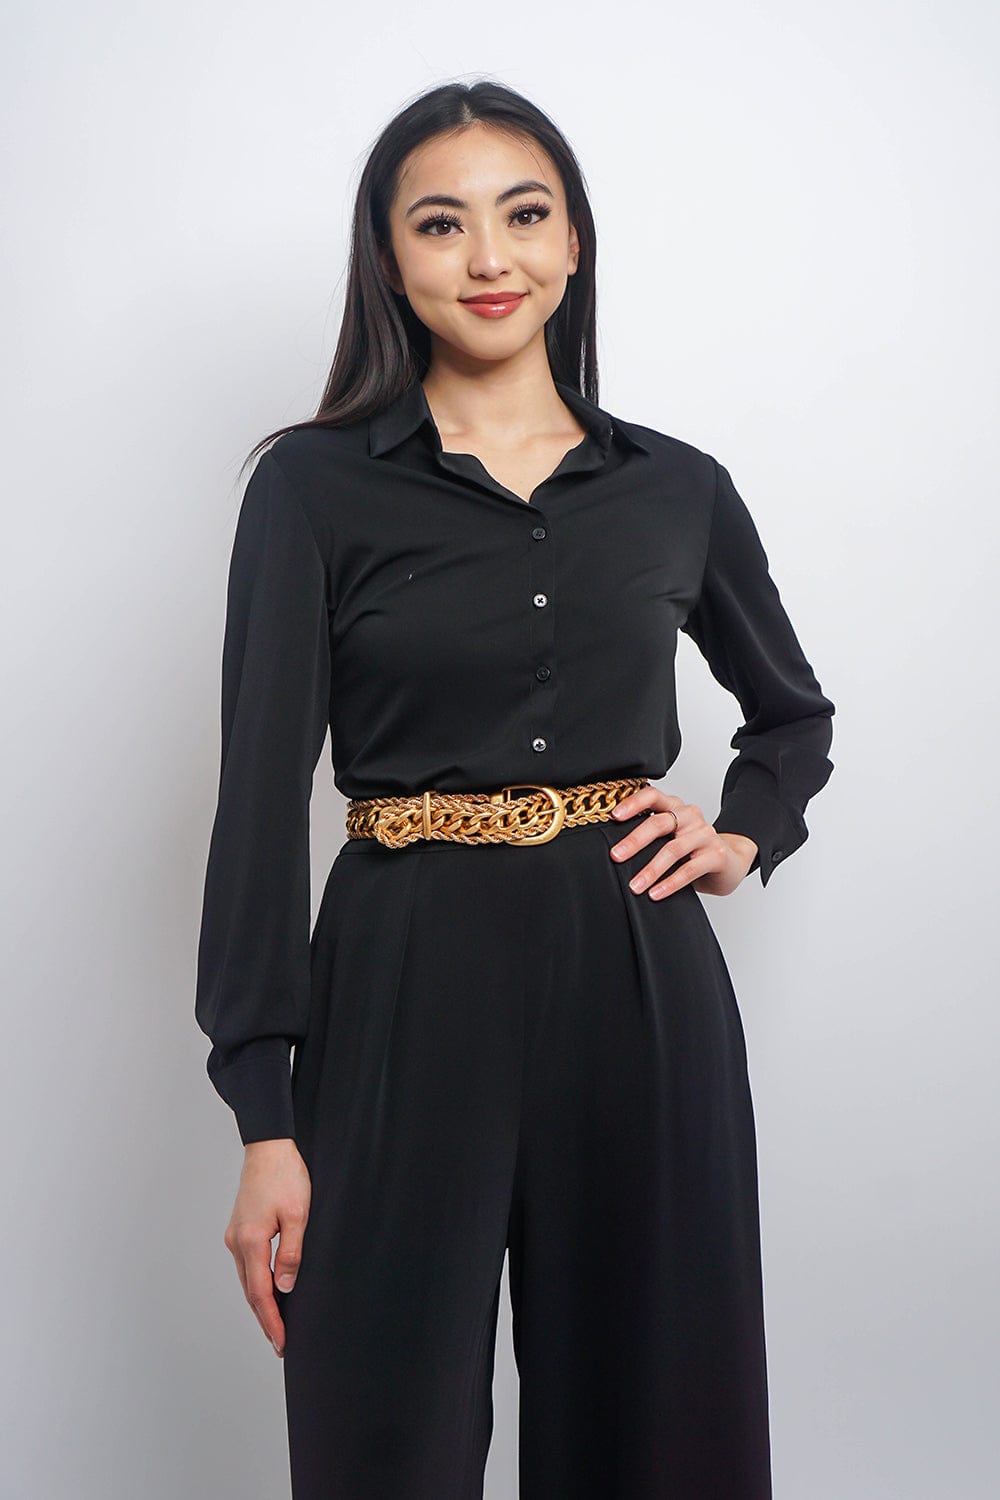 Chloe Dao TOPS Black Button Up Jennifer Dress Shirt